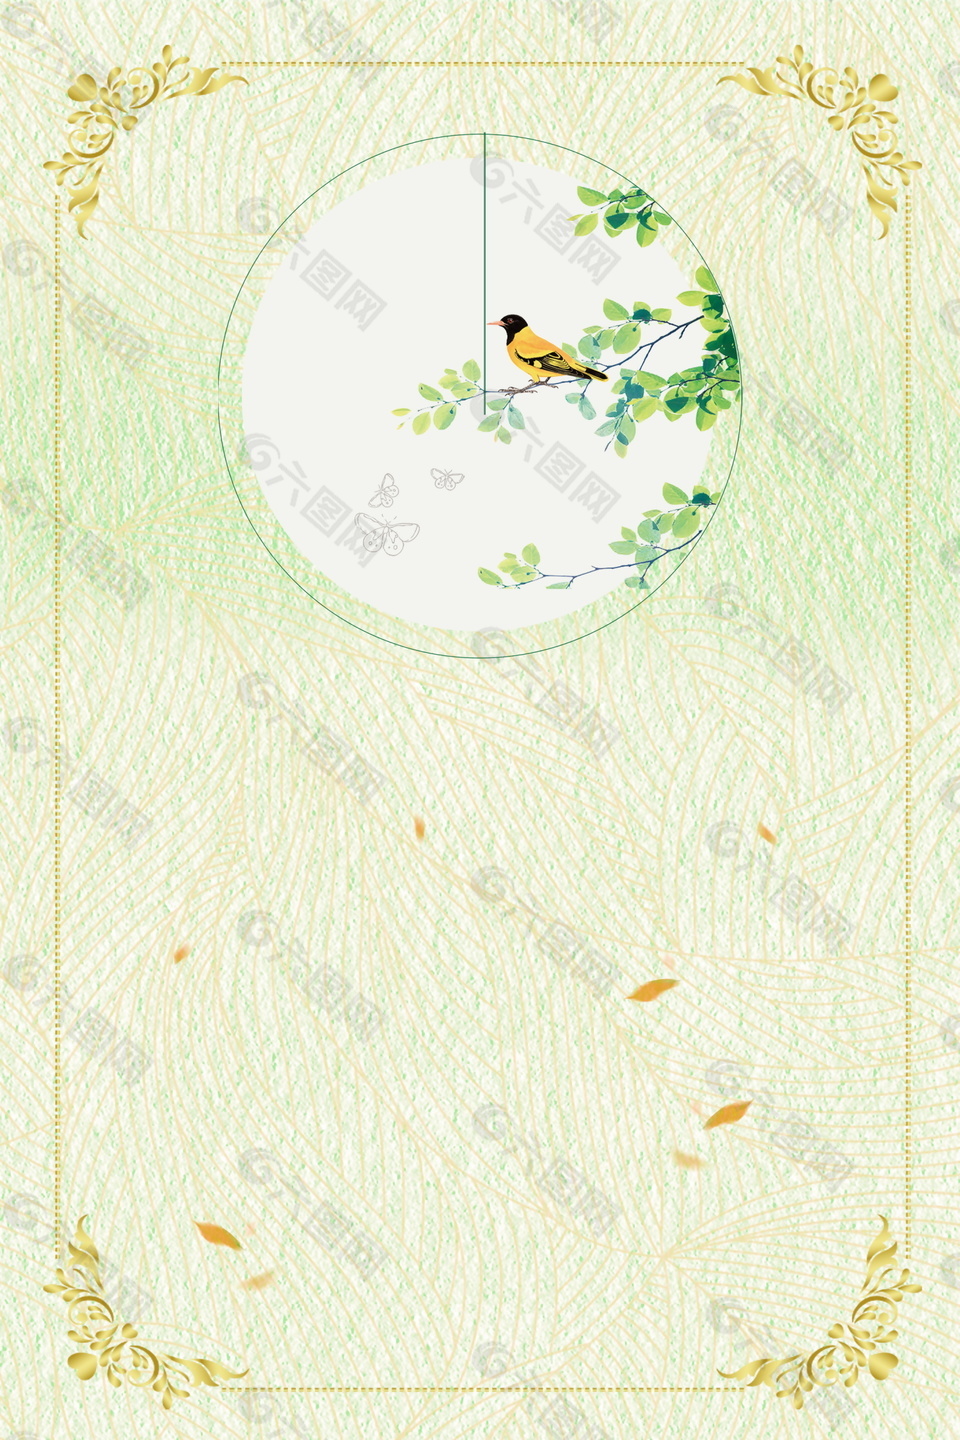 清新彩绘树枝小鸟边框海报背景设计